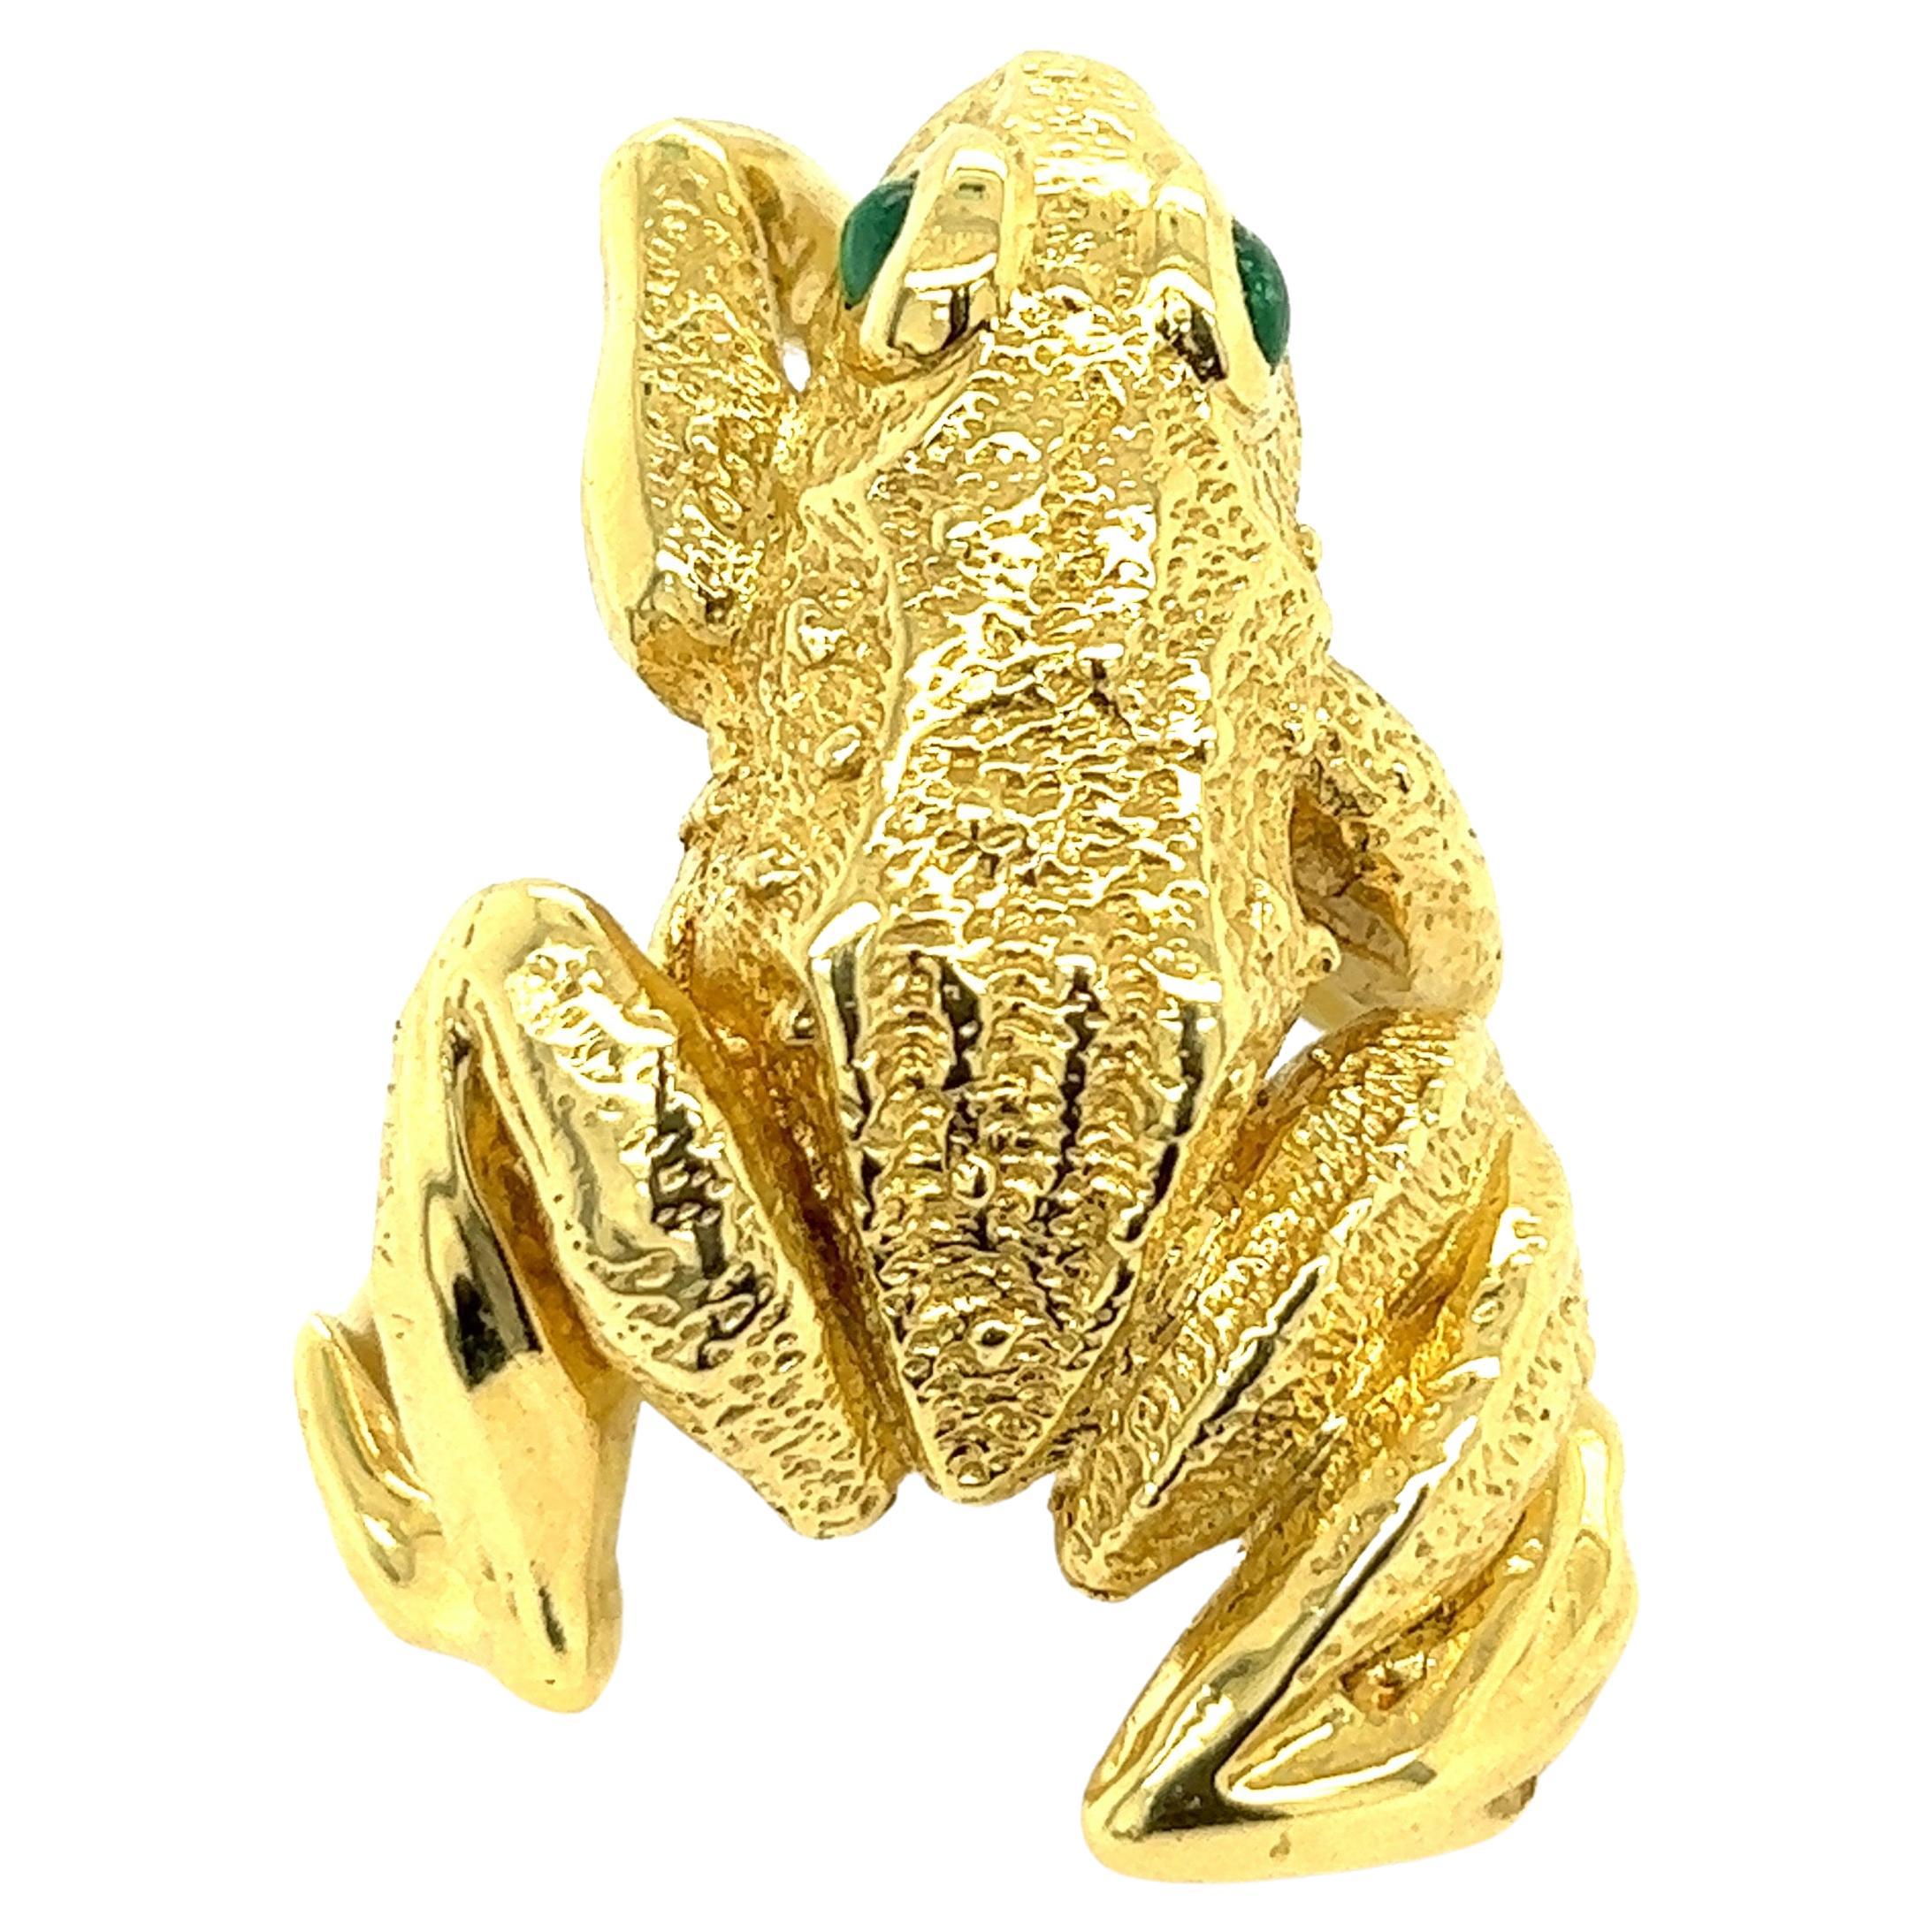 Kurt Wayne Vintage 18k Yellow Gold Large Frog Ring